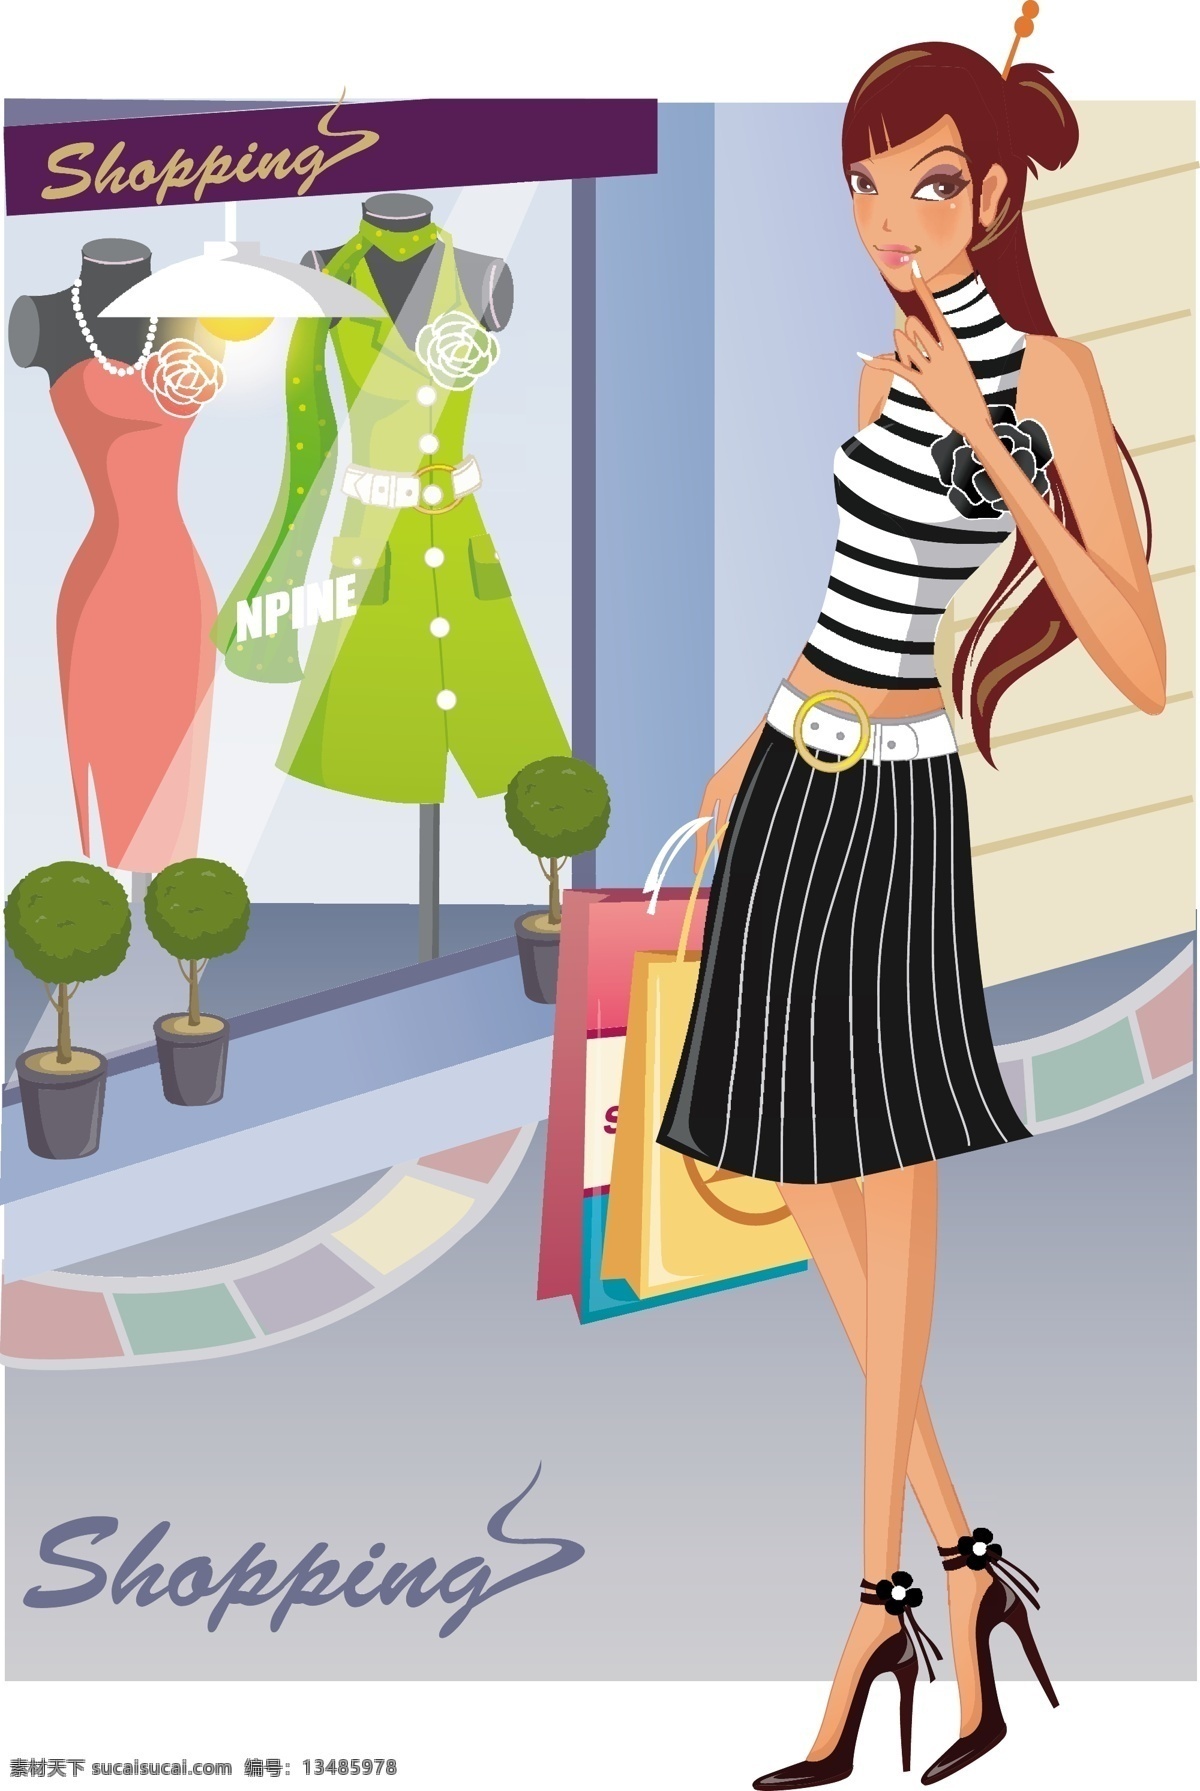 时尚 女性 购物 女性购物 时尚女性 咖啡 向量 购物袋 帽子 轮廓 矢量图 矢量人物